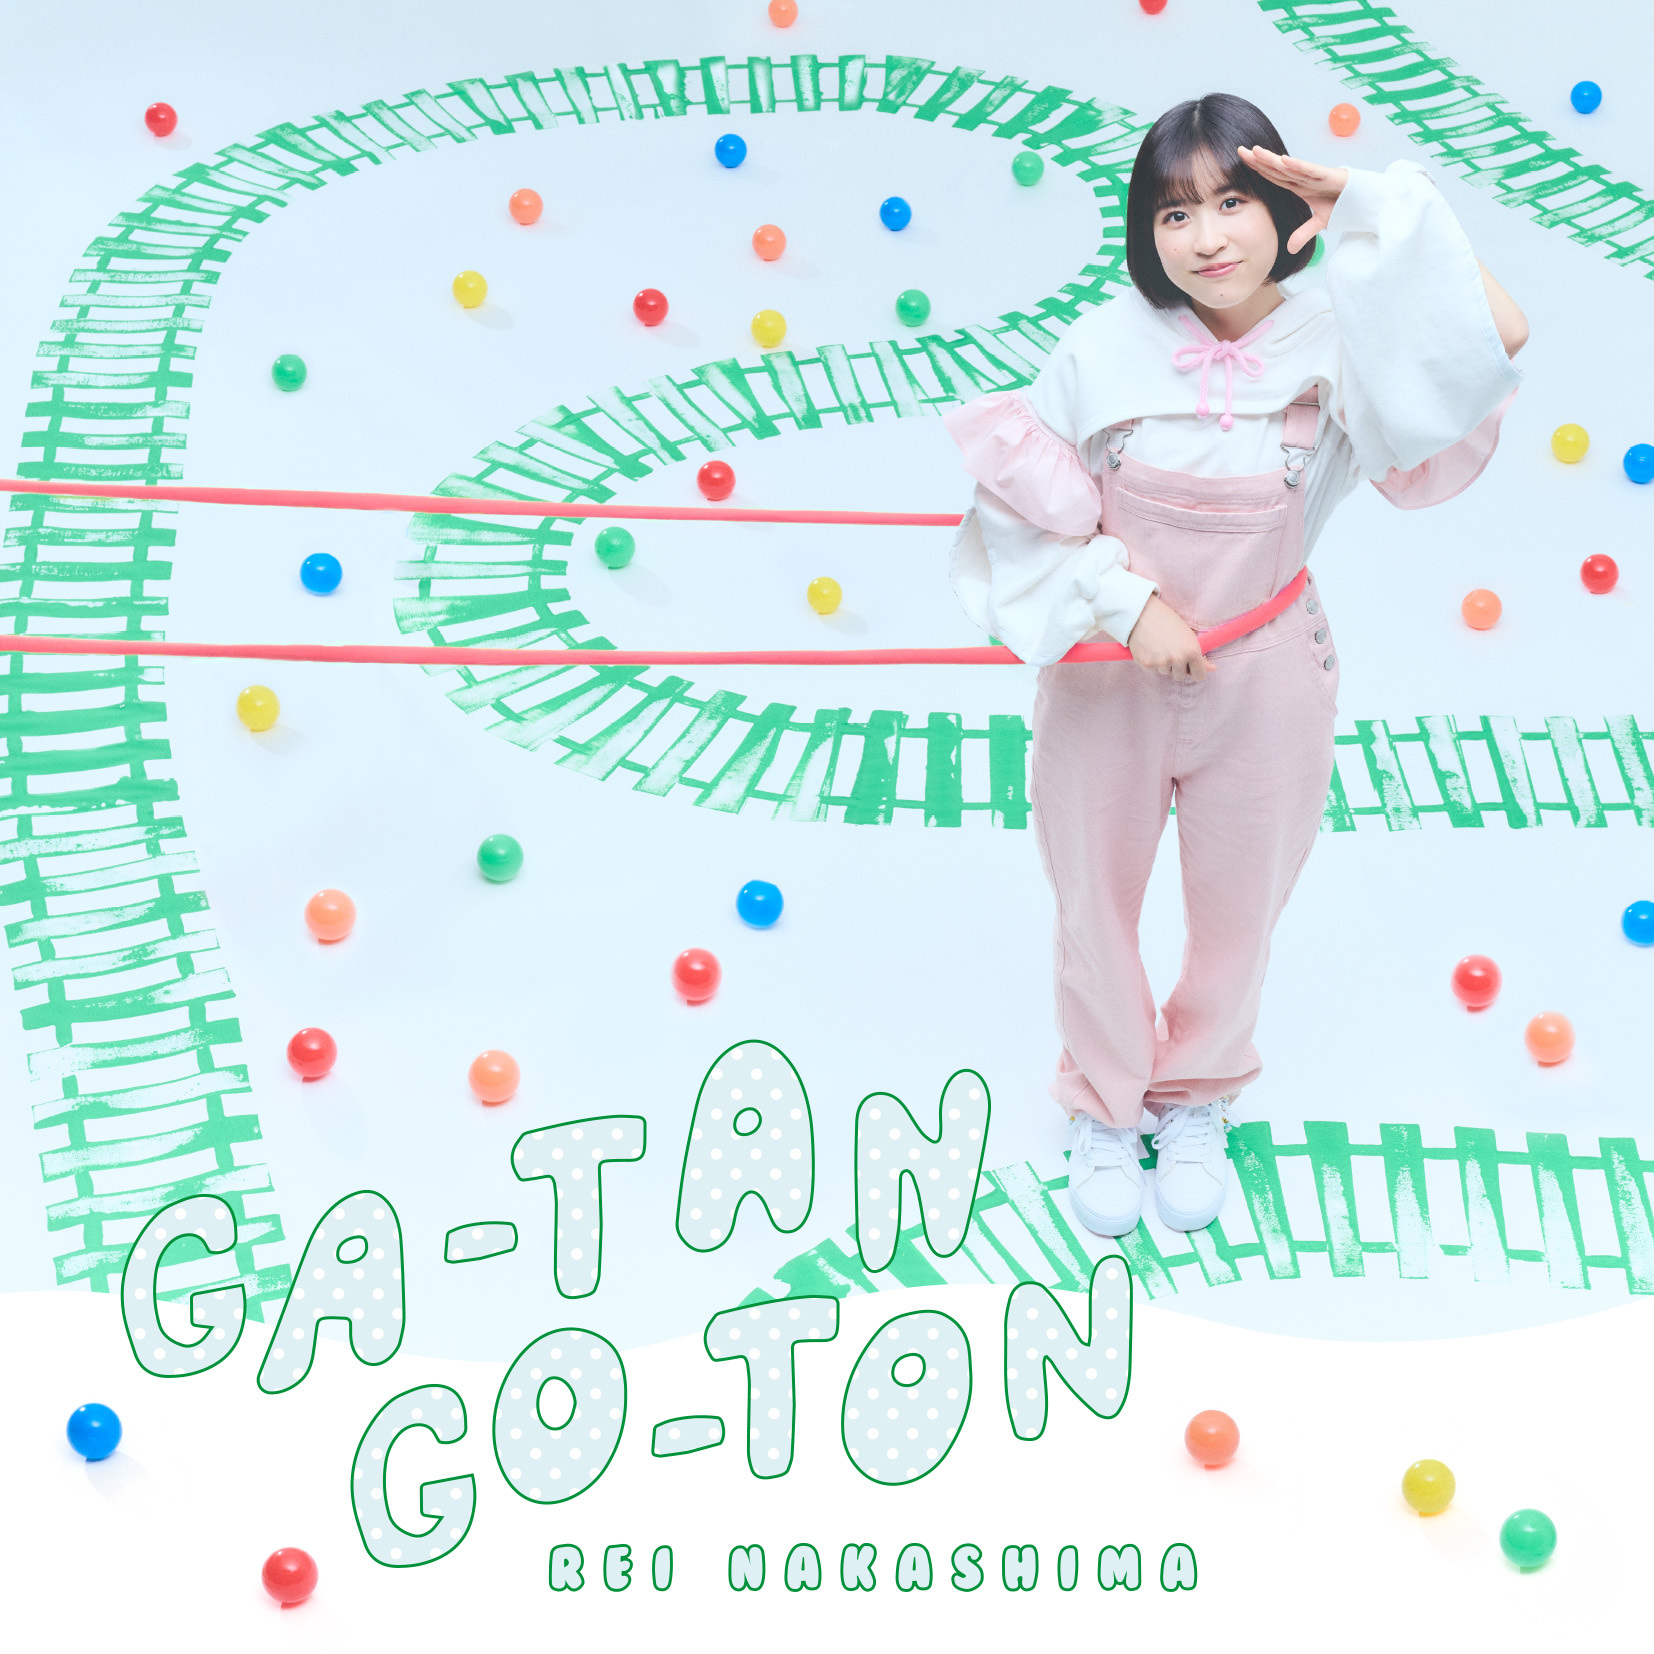 中島 怜「GA-TAN GO-TON」初回限定盤